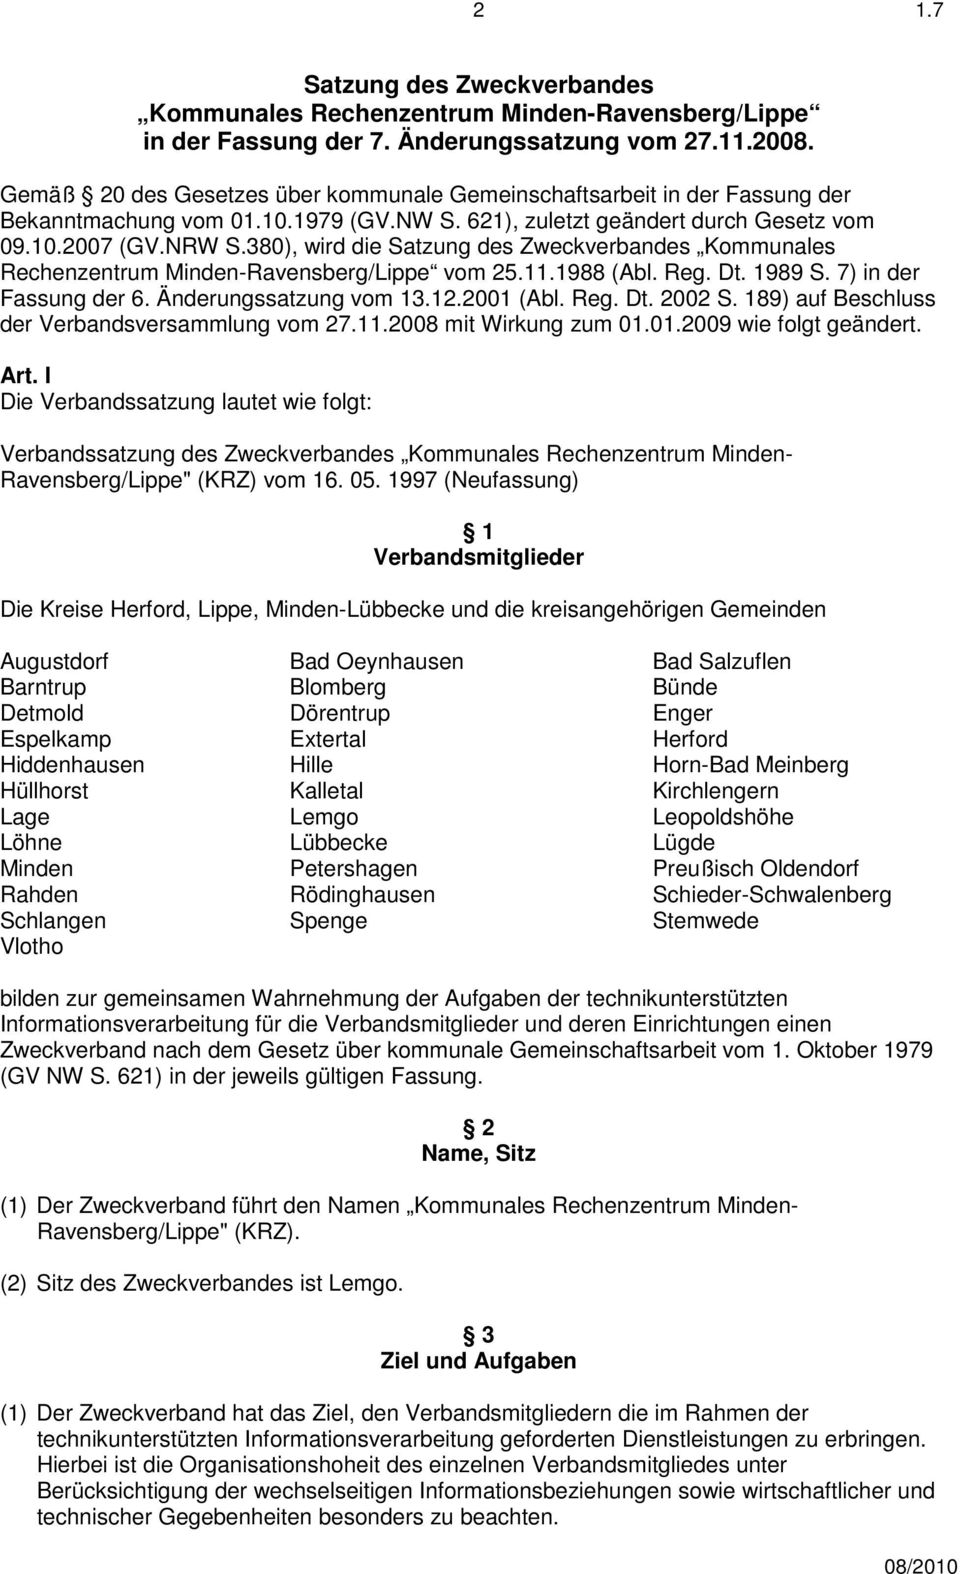 380), wird die Satzung des Zweckverbandes Kommunales Rechenzentrum Minden-Ravensberg/Lippe vom 25.11.1988 (Abl. Reg. Dt. 1989 S. 7) in der Fassung der 6. Änderungssatzung vom 13.12.2001 (Abl. Reg. Dt. 2002 S.